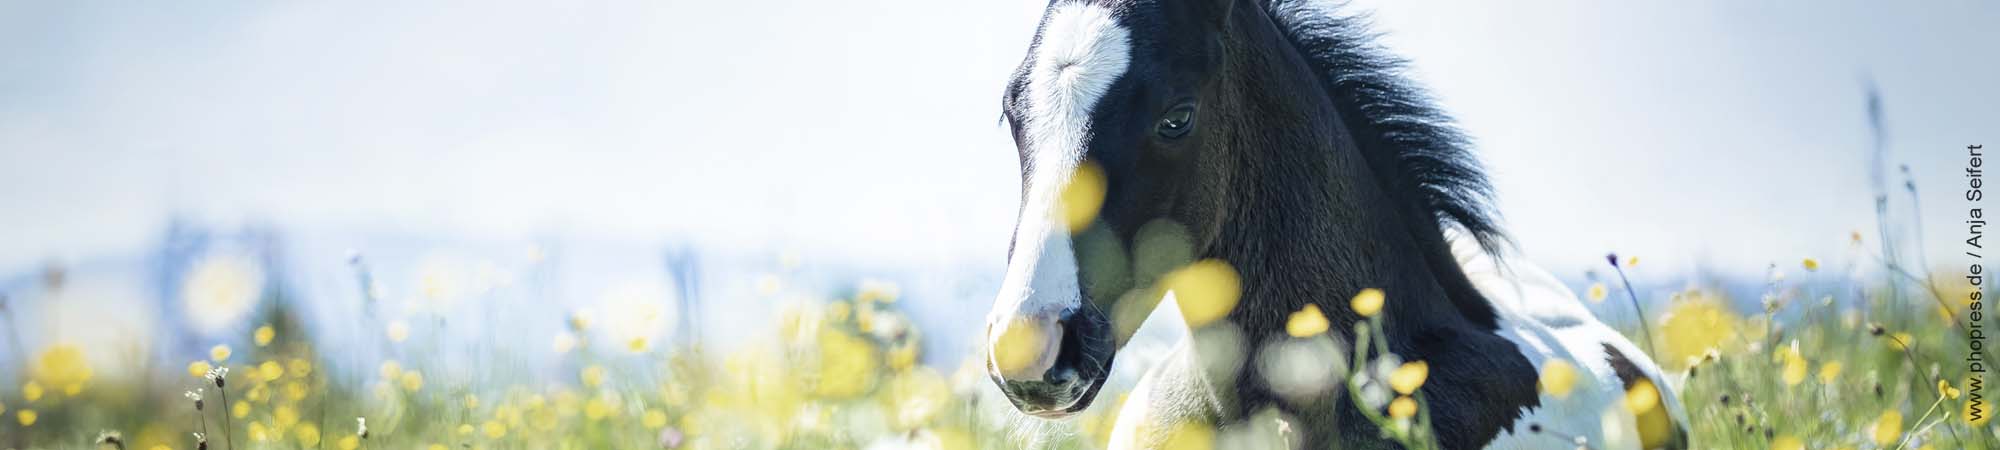 Pollenallergie beim Pferd